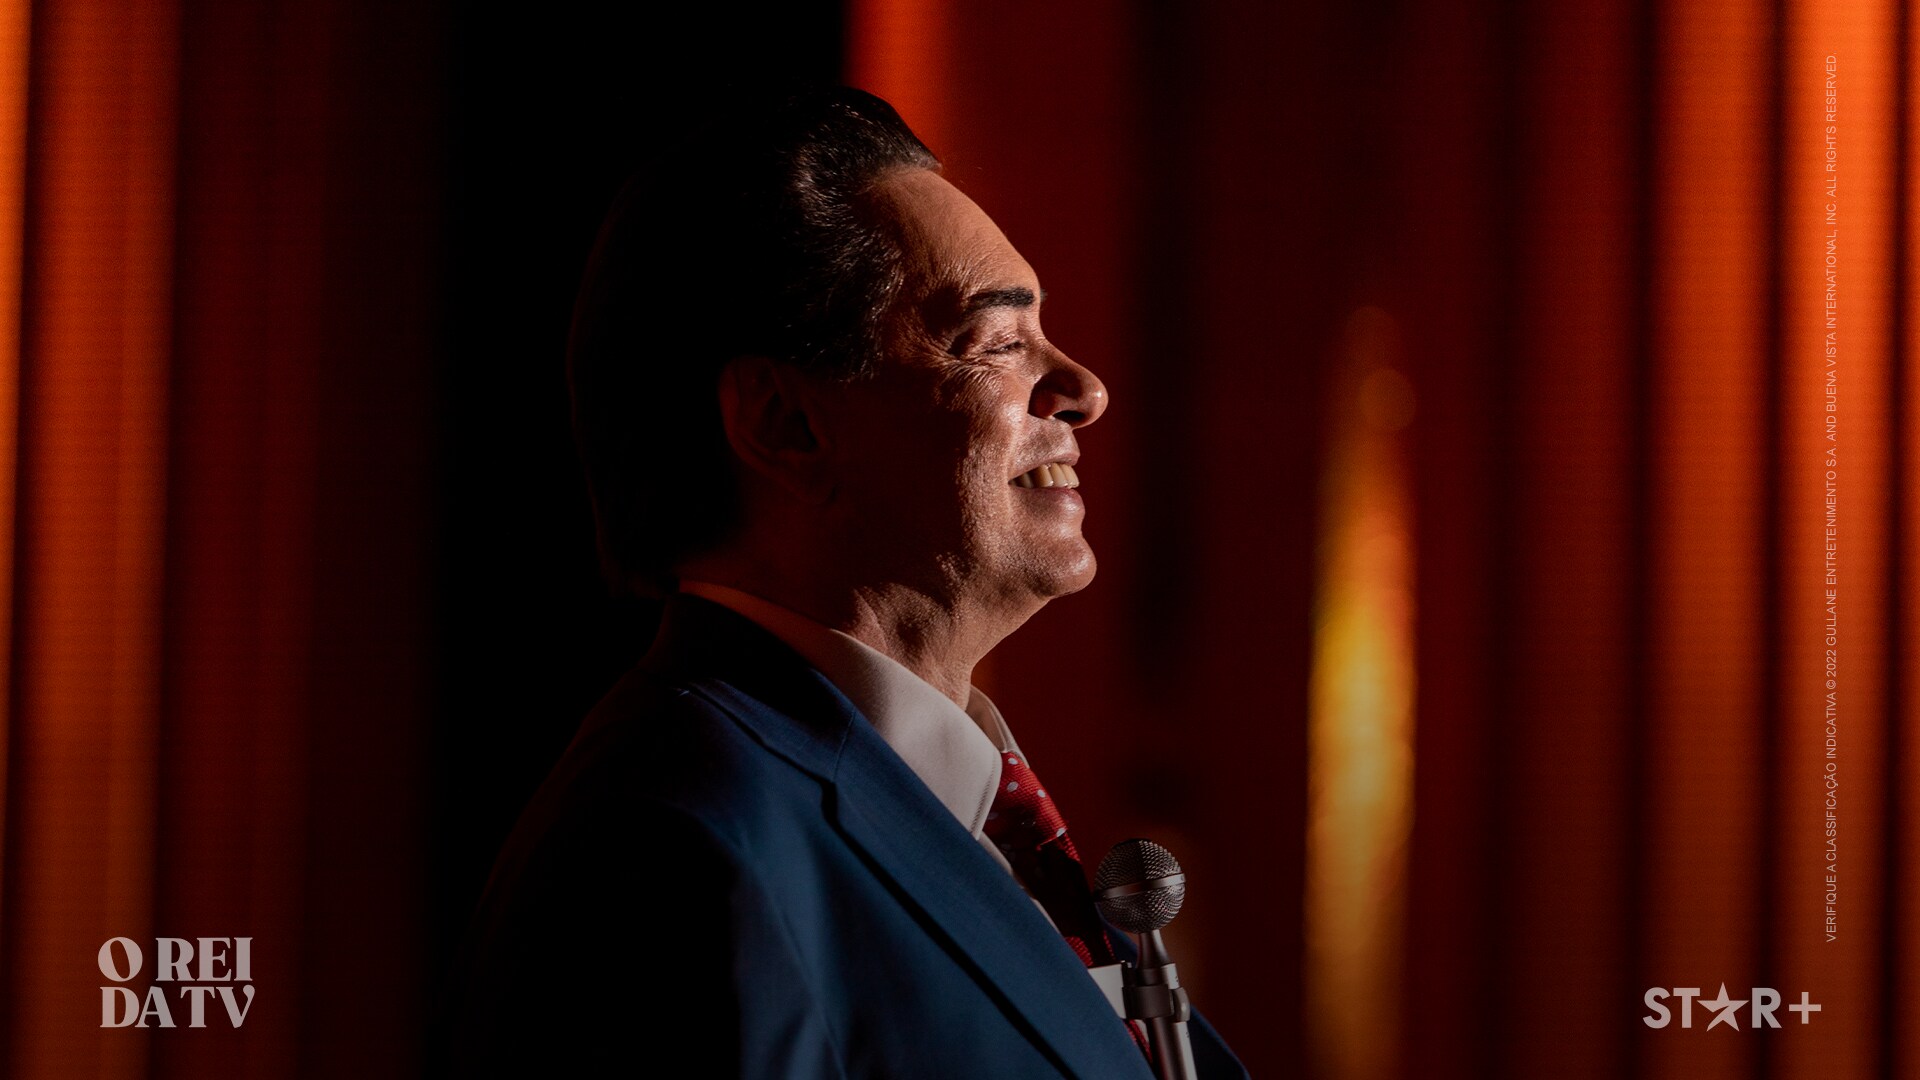 Os 4 melhores momentos de Silvio Santos como candidato a presidente do Brasil em 'O Rei da TV'